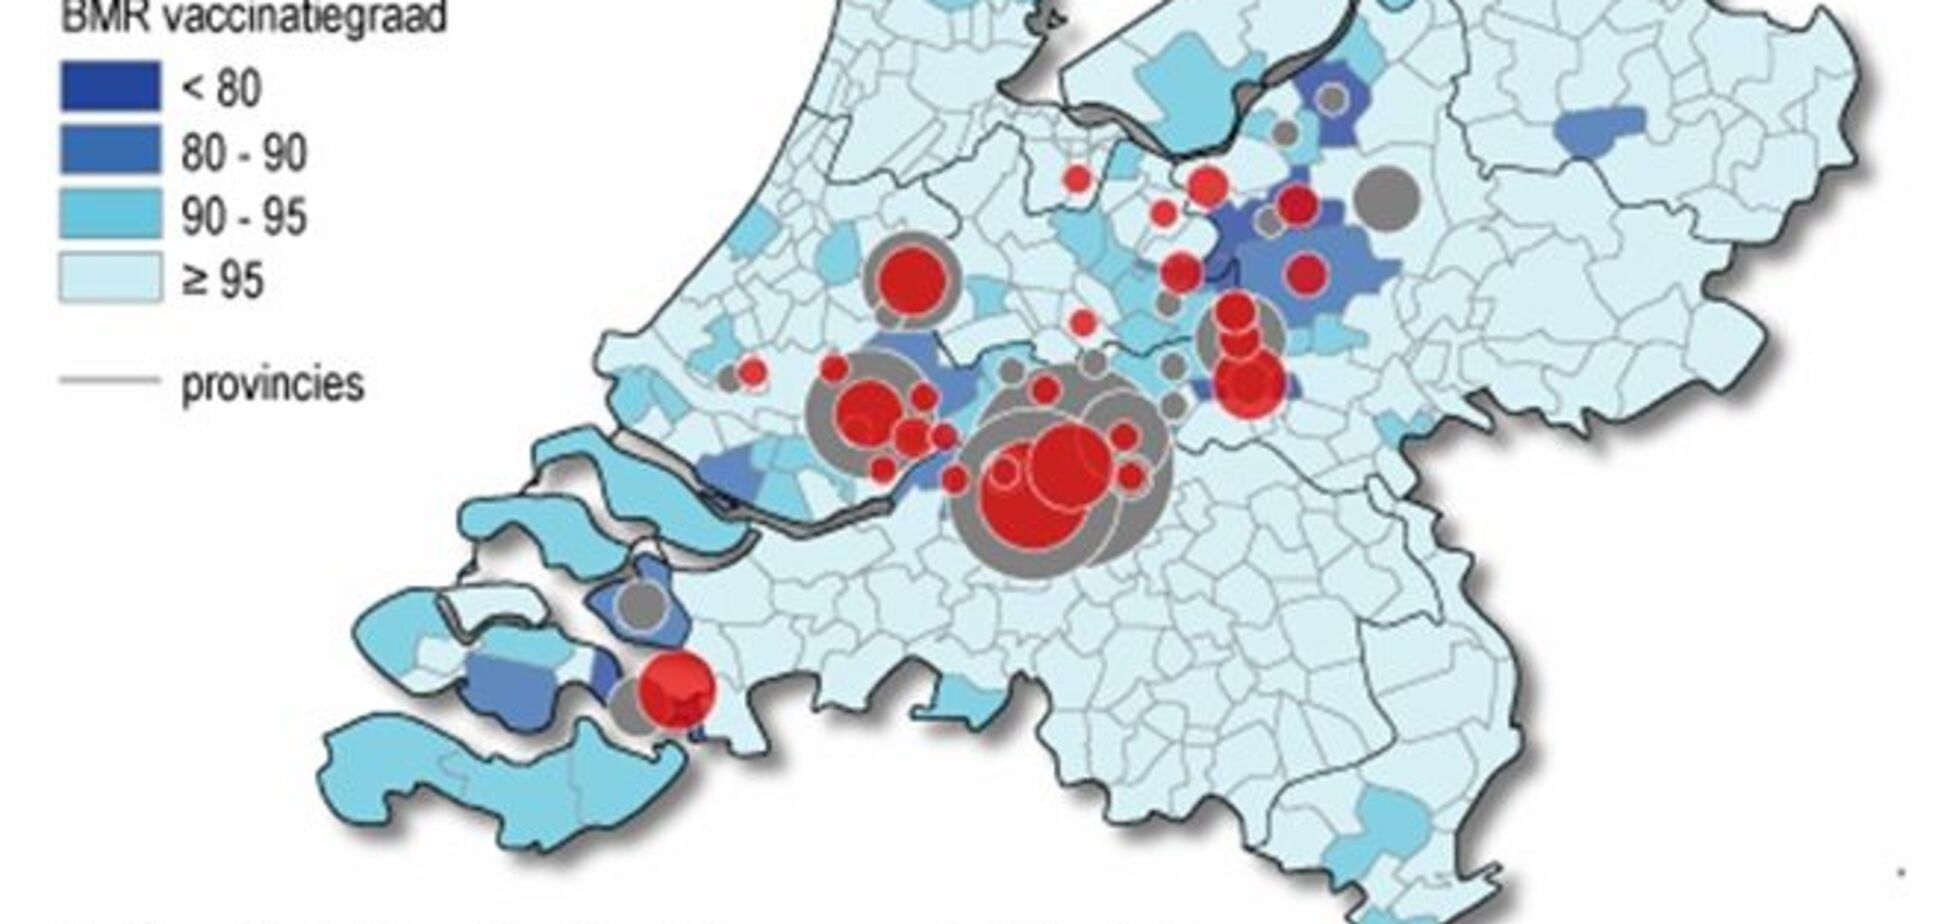 Эмидемия кори в Нидерландах коснулась только протестантских фундаменталистов